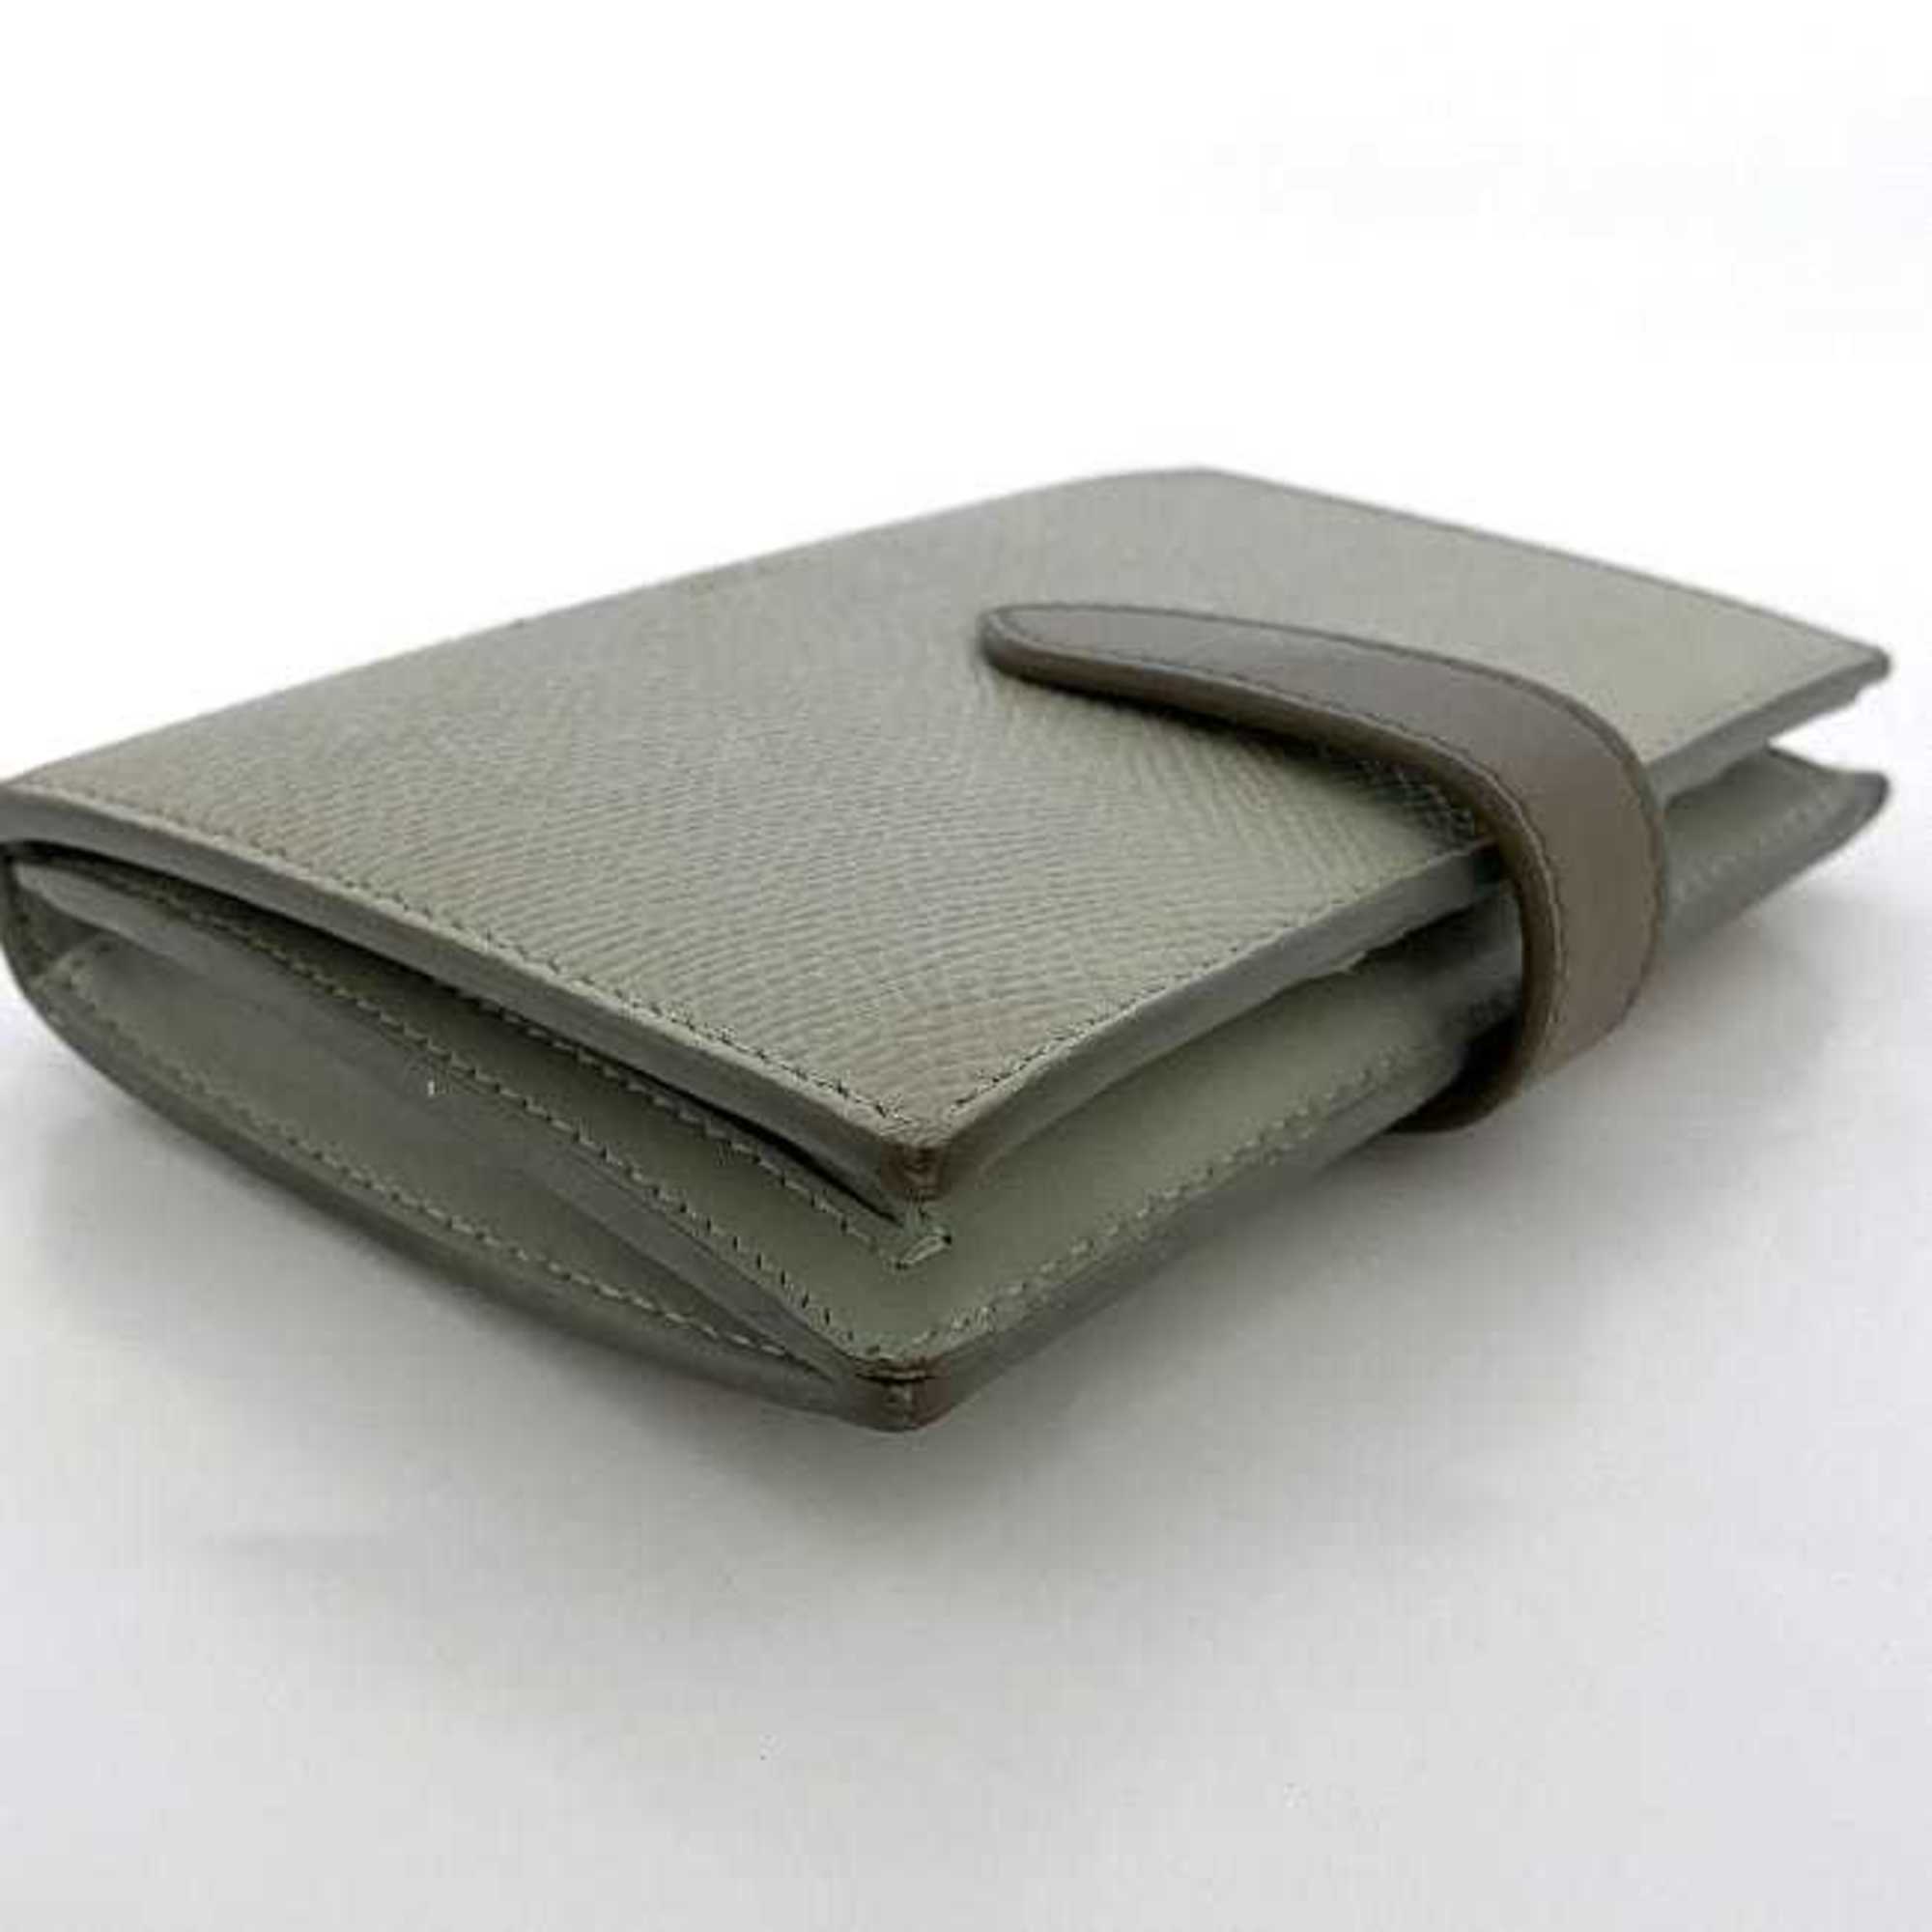 Celine wallet medium strap gray 10B64 3BRU 30VL folio leather CELINE bicolor smoky color ladies